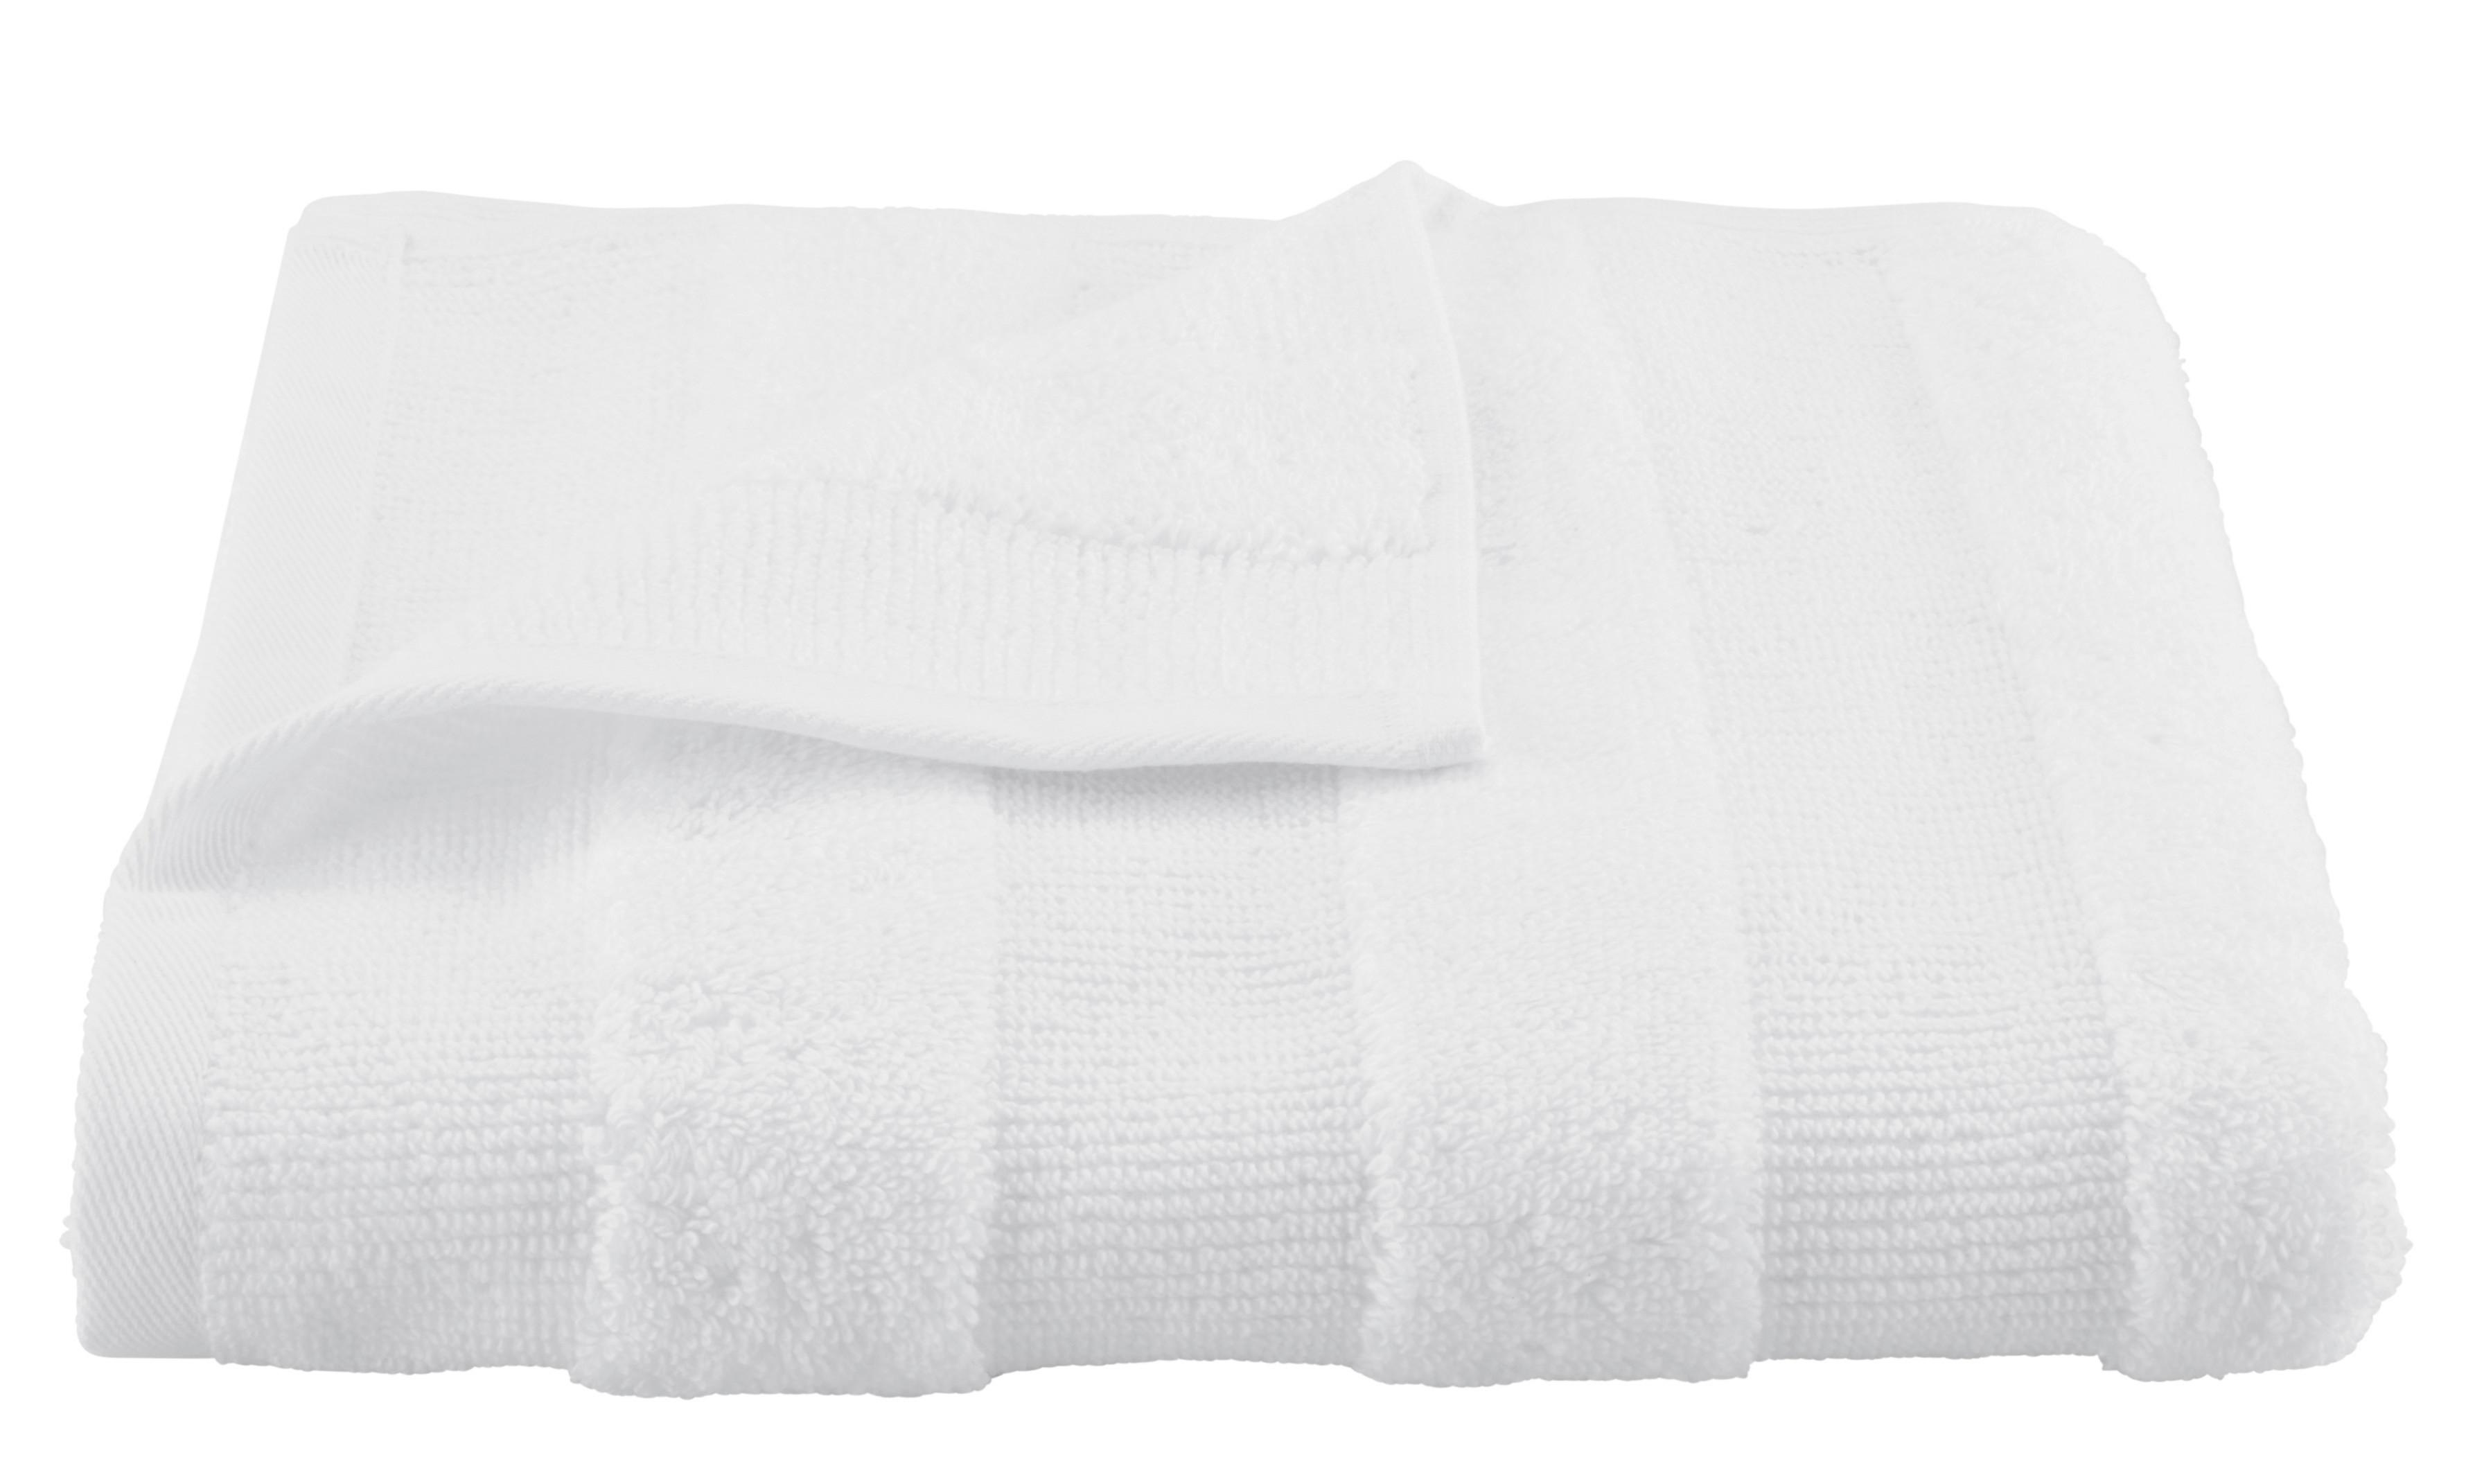 Handtuch Chris in Weiß ca. 50x100cm - Weiß, Textil (50/100cm) - Premium Living